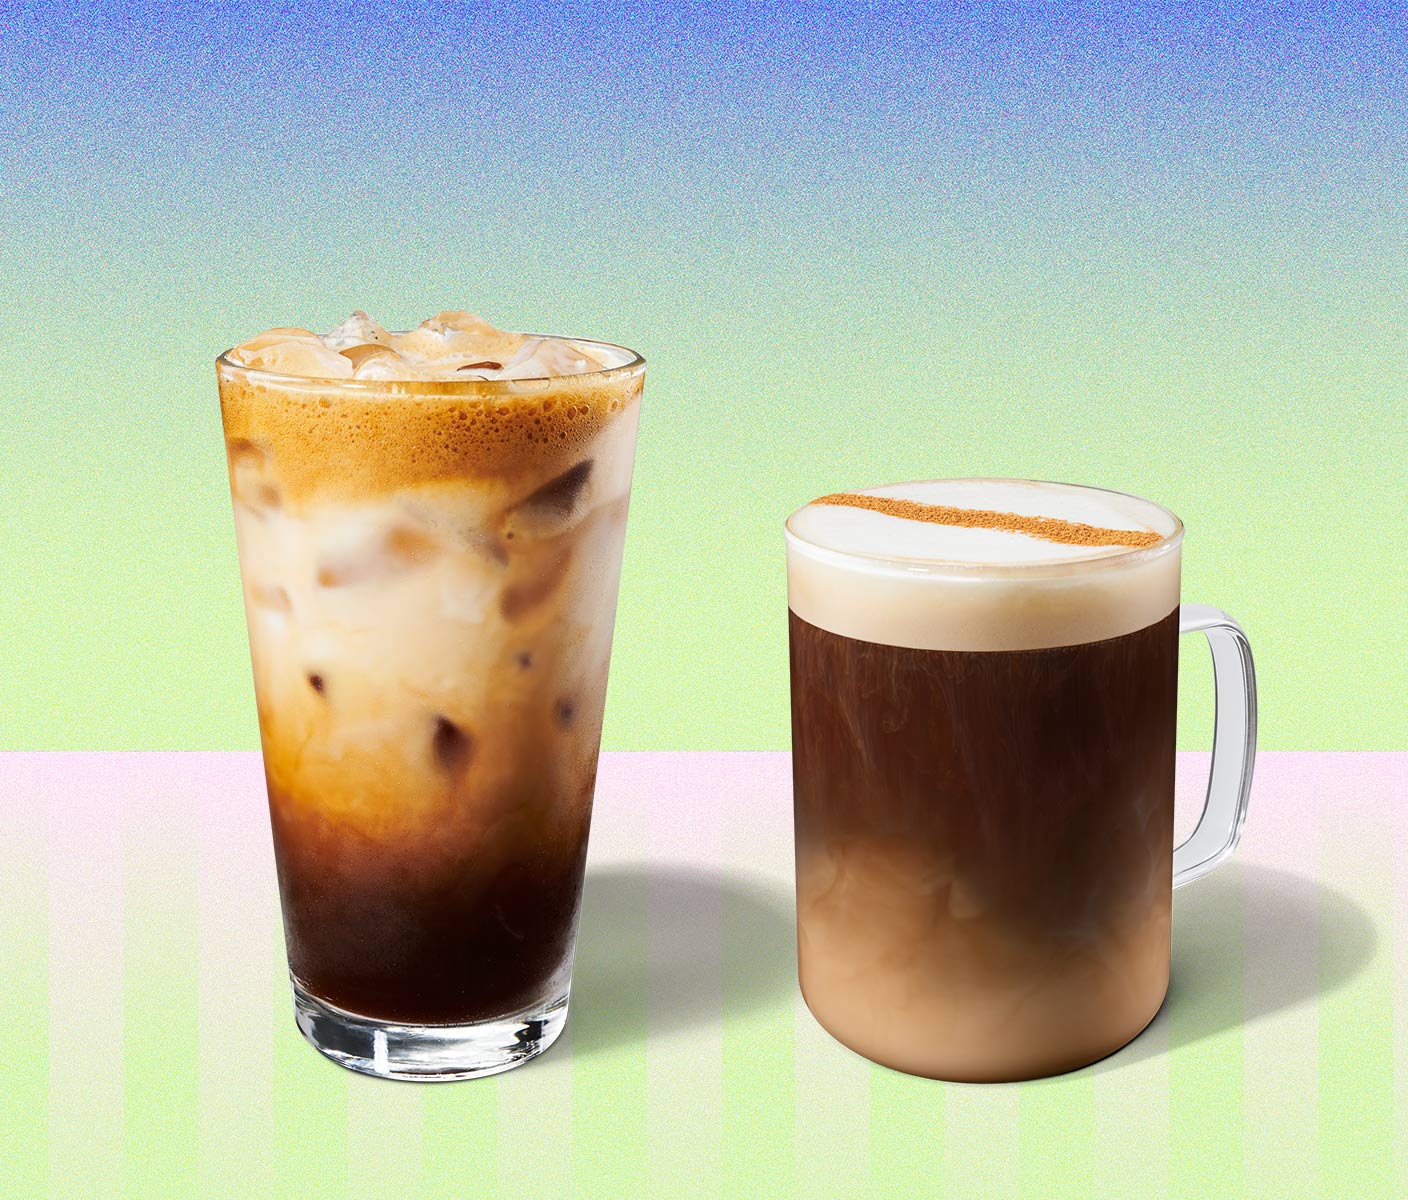 Une boisson glacée et marbrée à base de café servie dans un grand verre à côté d’une boisson chaude à base de café servie dans une tasse en verre.